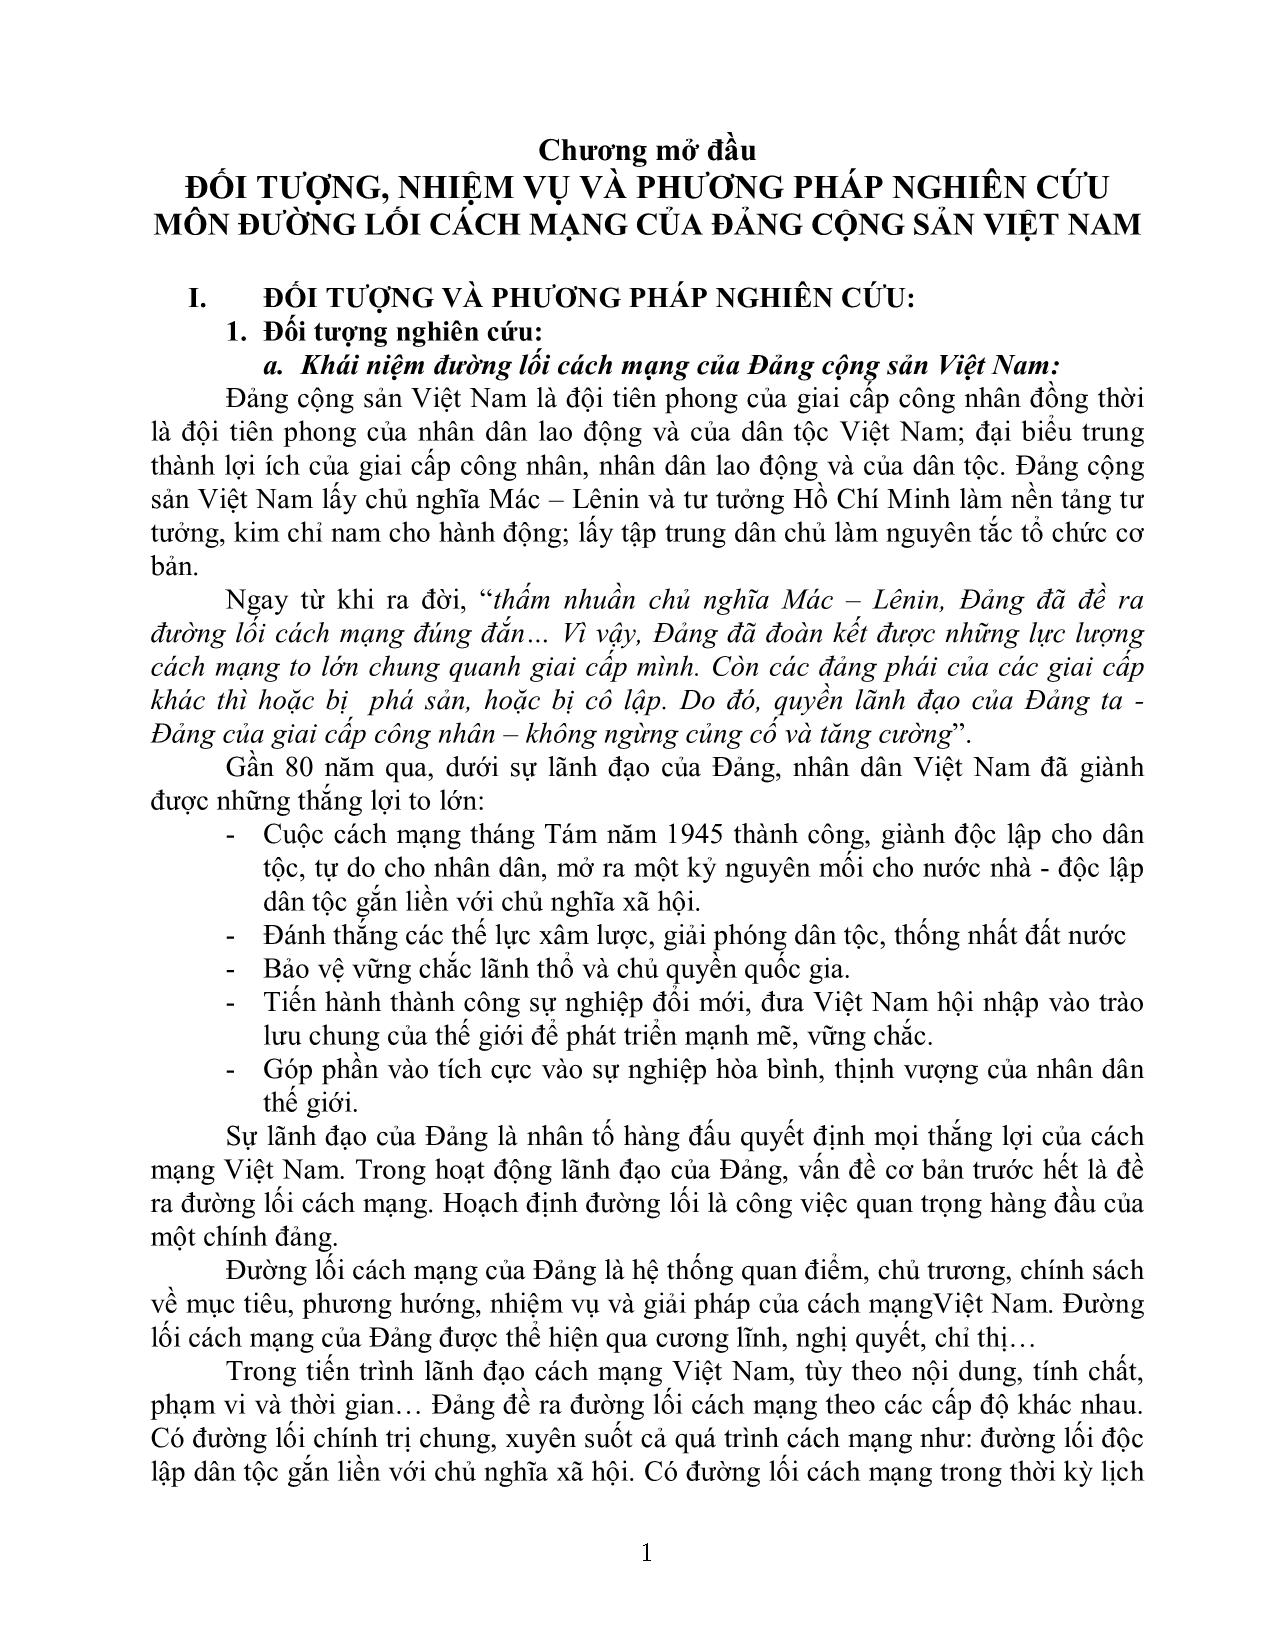 Đối tượng, nhiệm vụ và phương pháp nghiên cứu môn đường lối cách mạng của đảng cộng sản Việt Nam trang 1